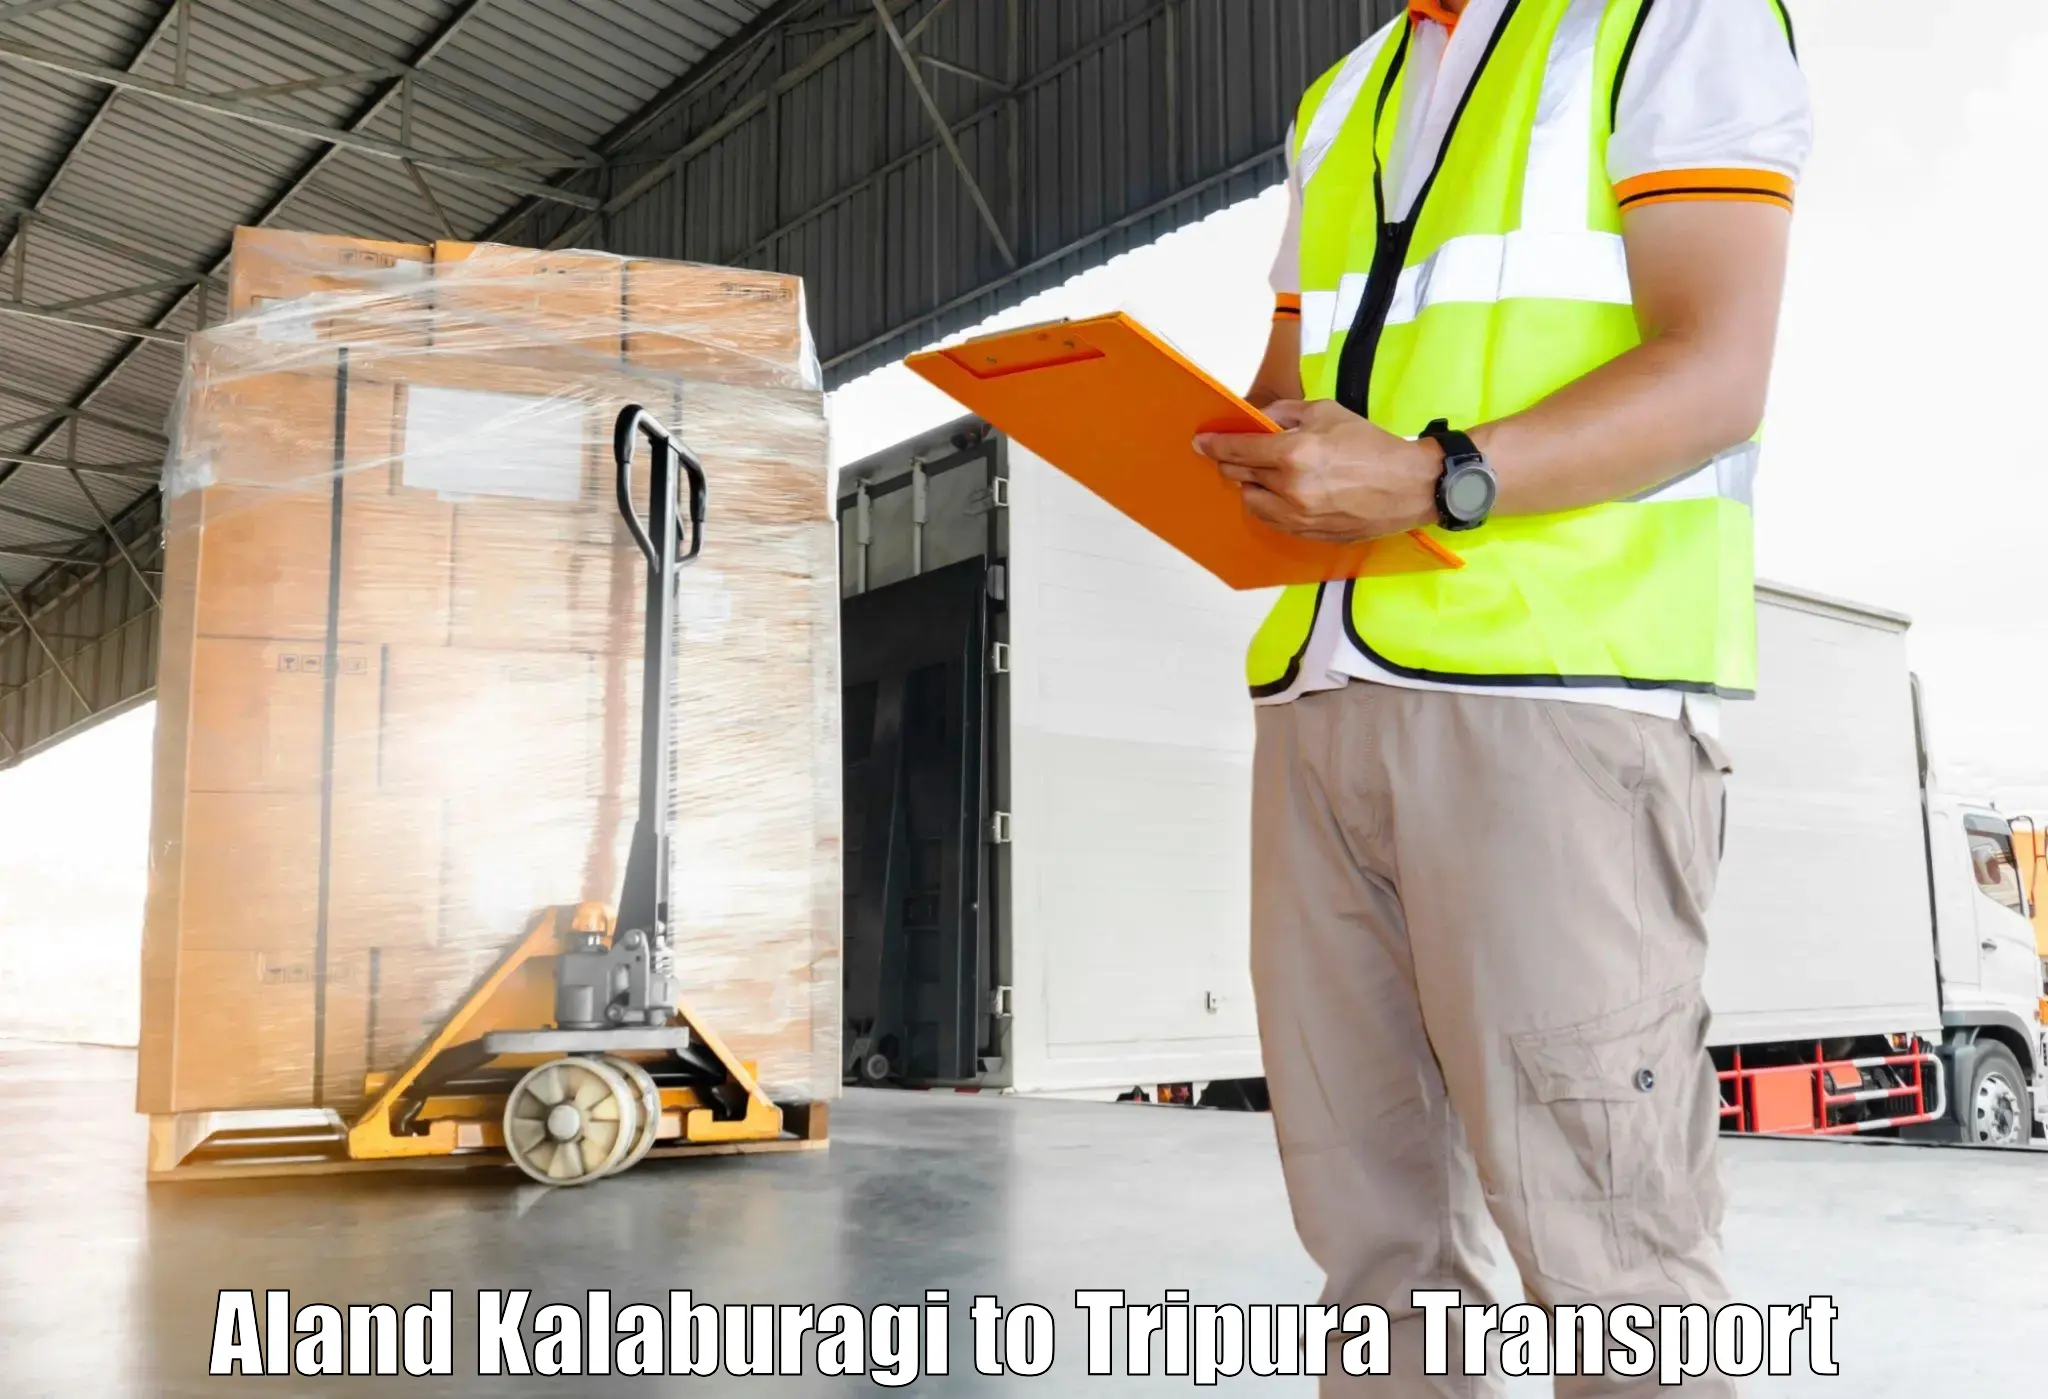 Shipping partner Aland Kalaburagi to Ambassa